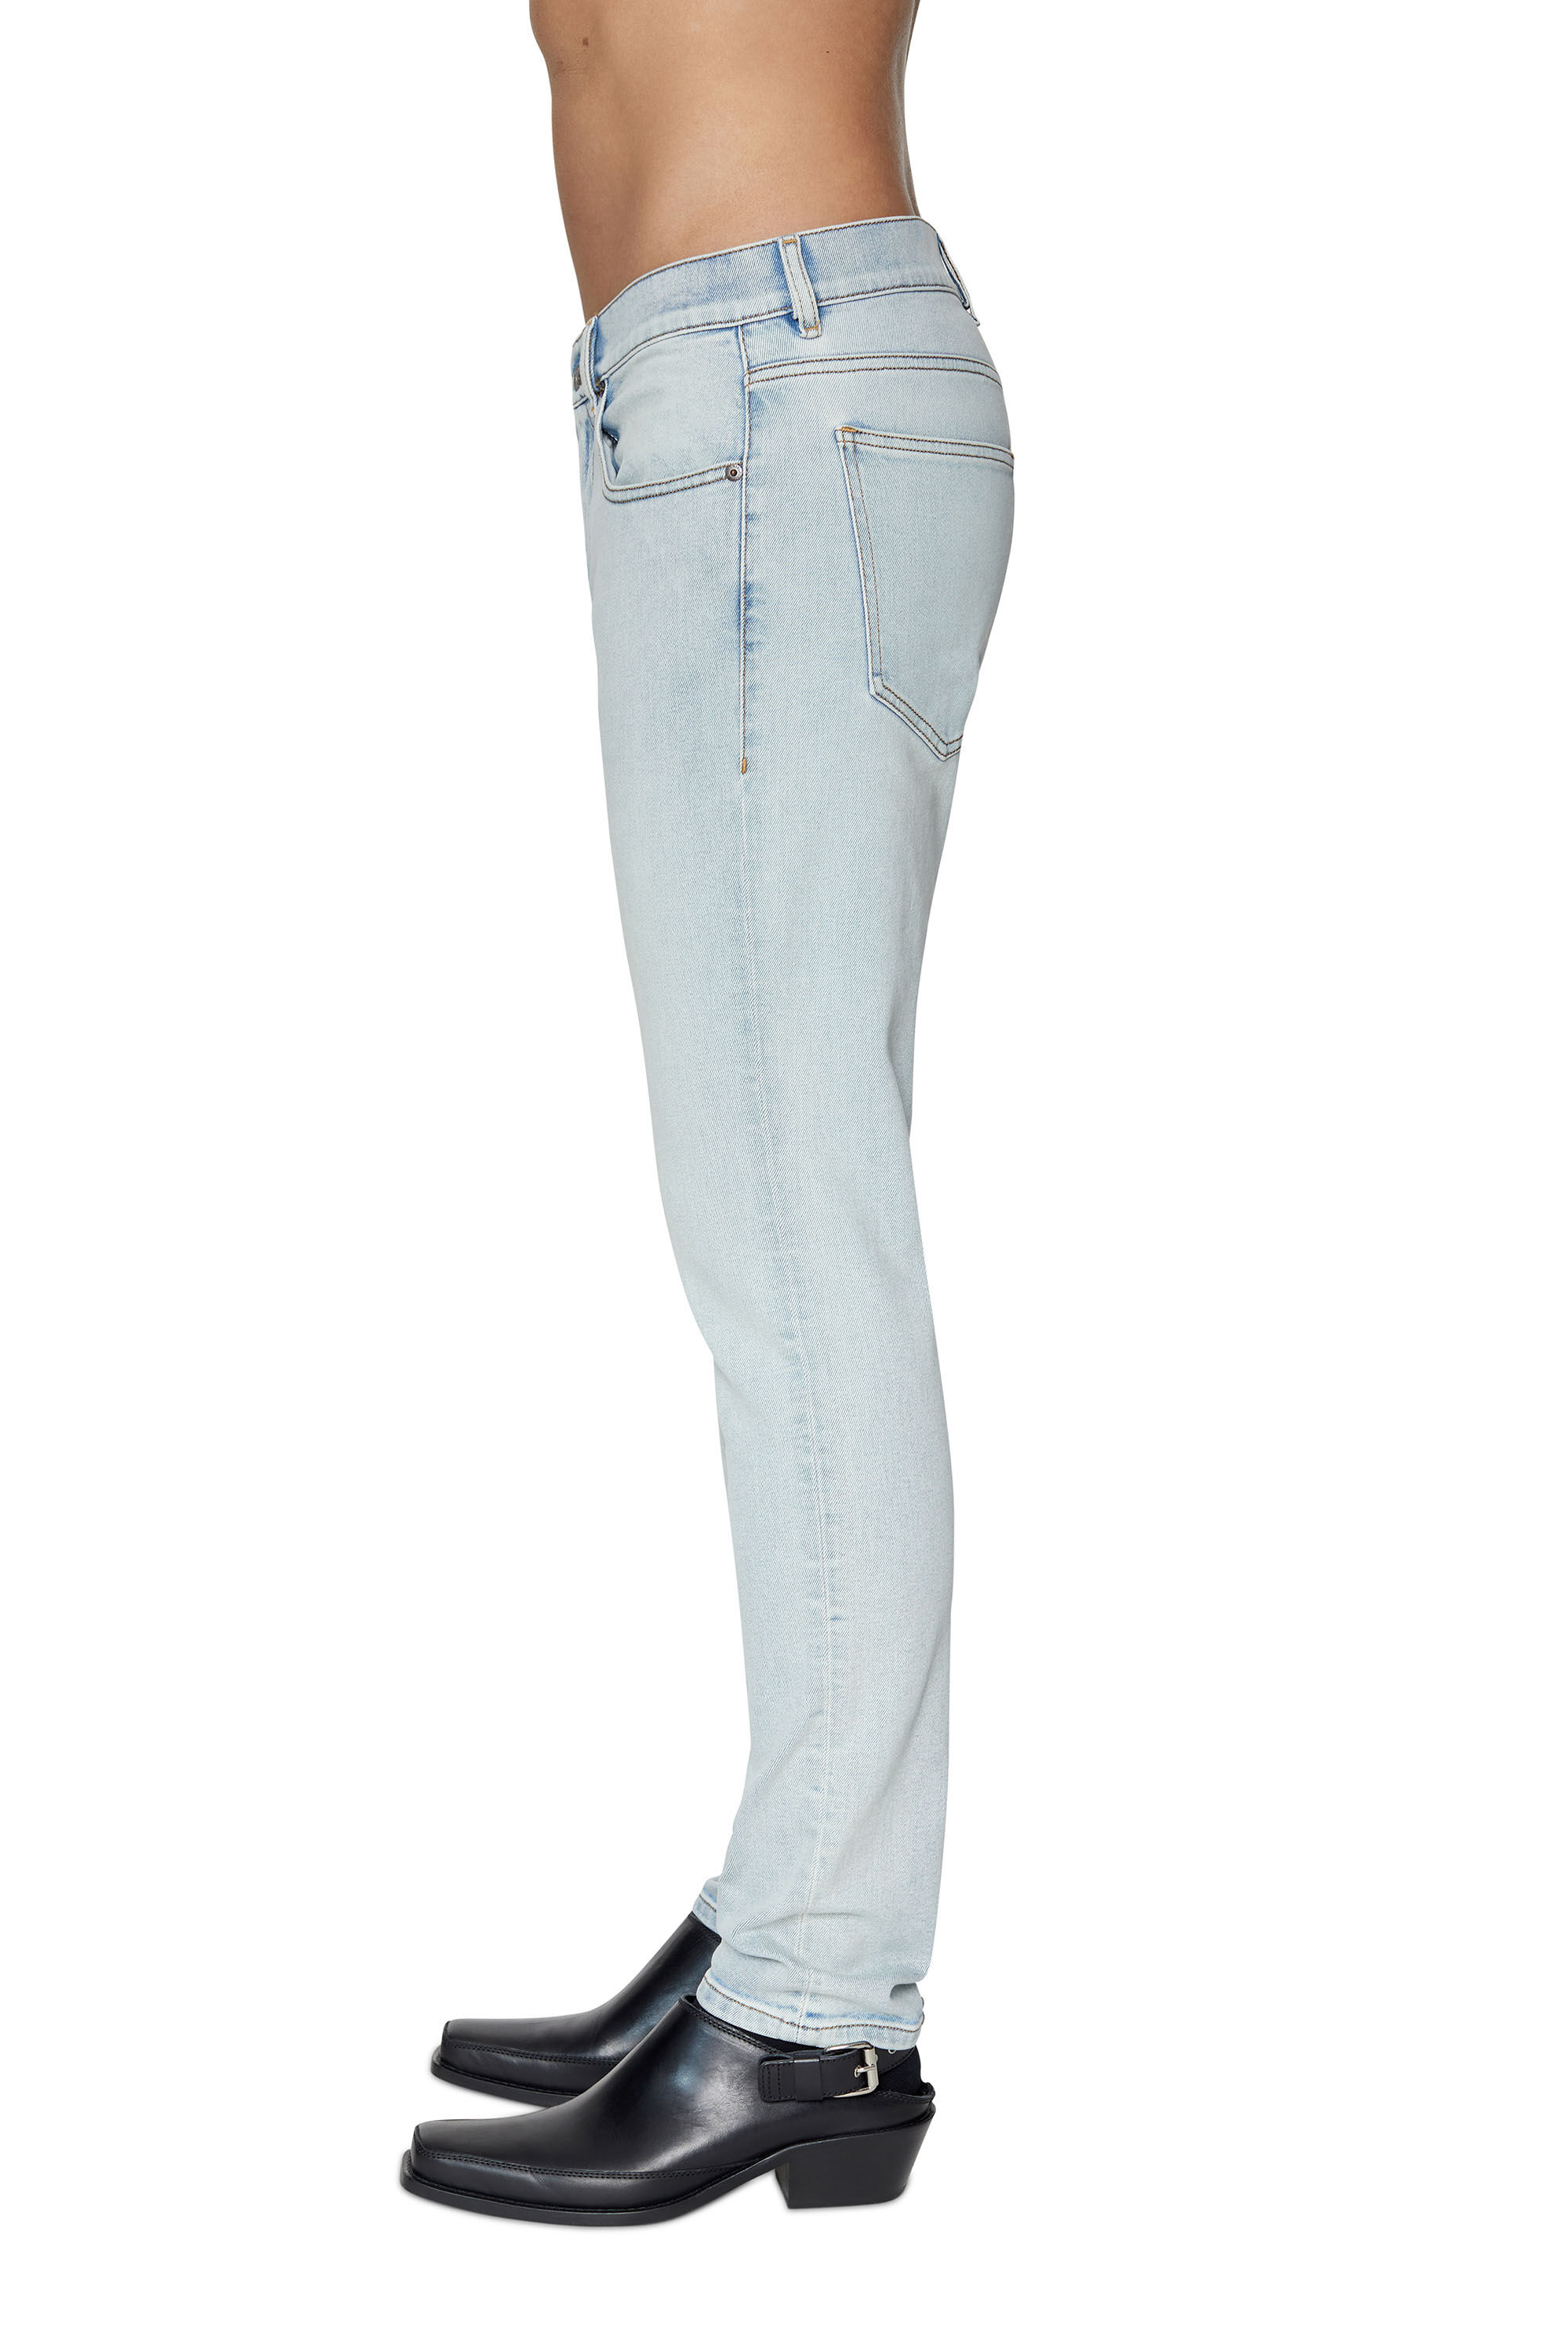 Diesel - Slim Jeans 2019 D-Strukt 09C08, Light Blue - Image 5